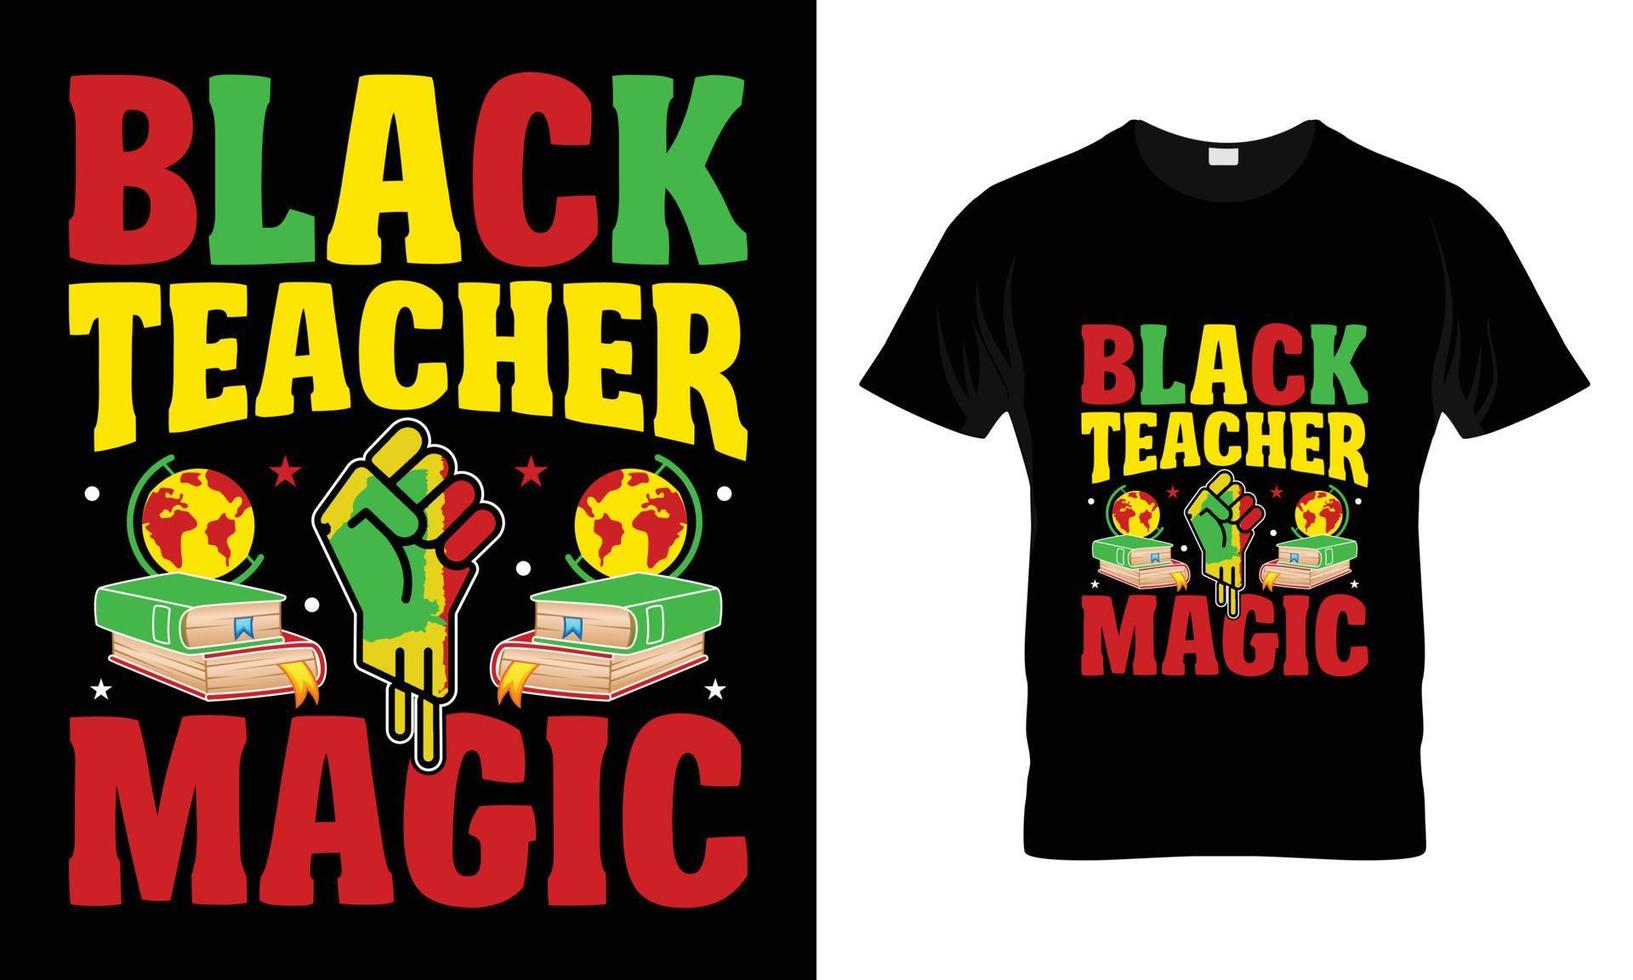 schwarzer lehrer magisches t-shirt design vektor